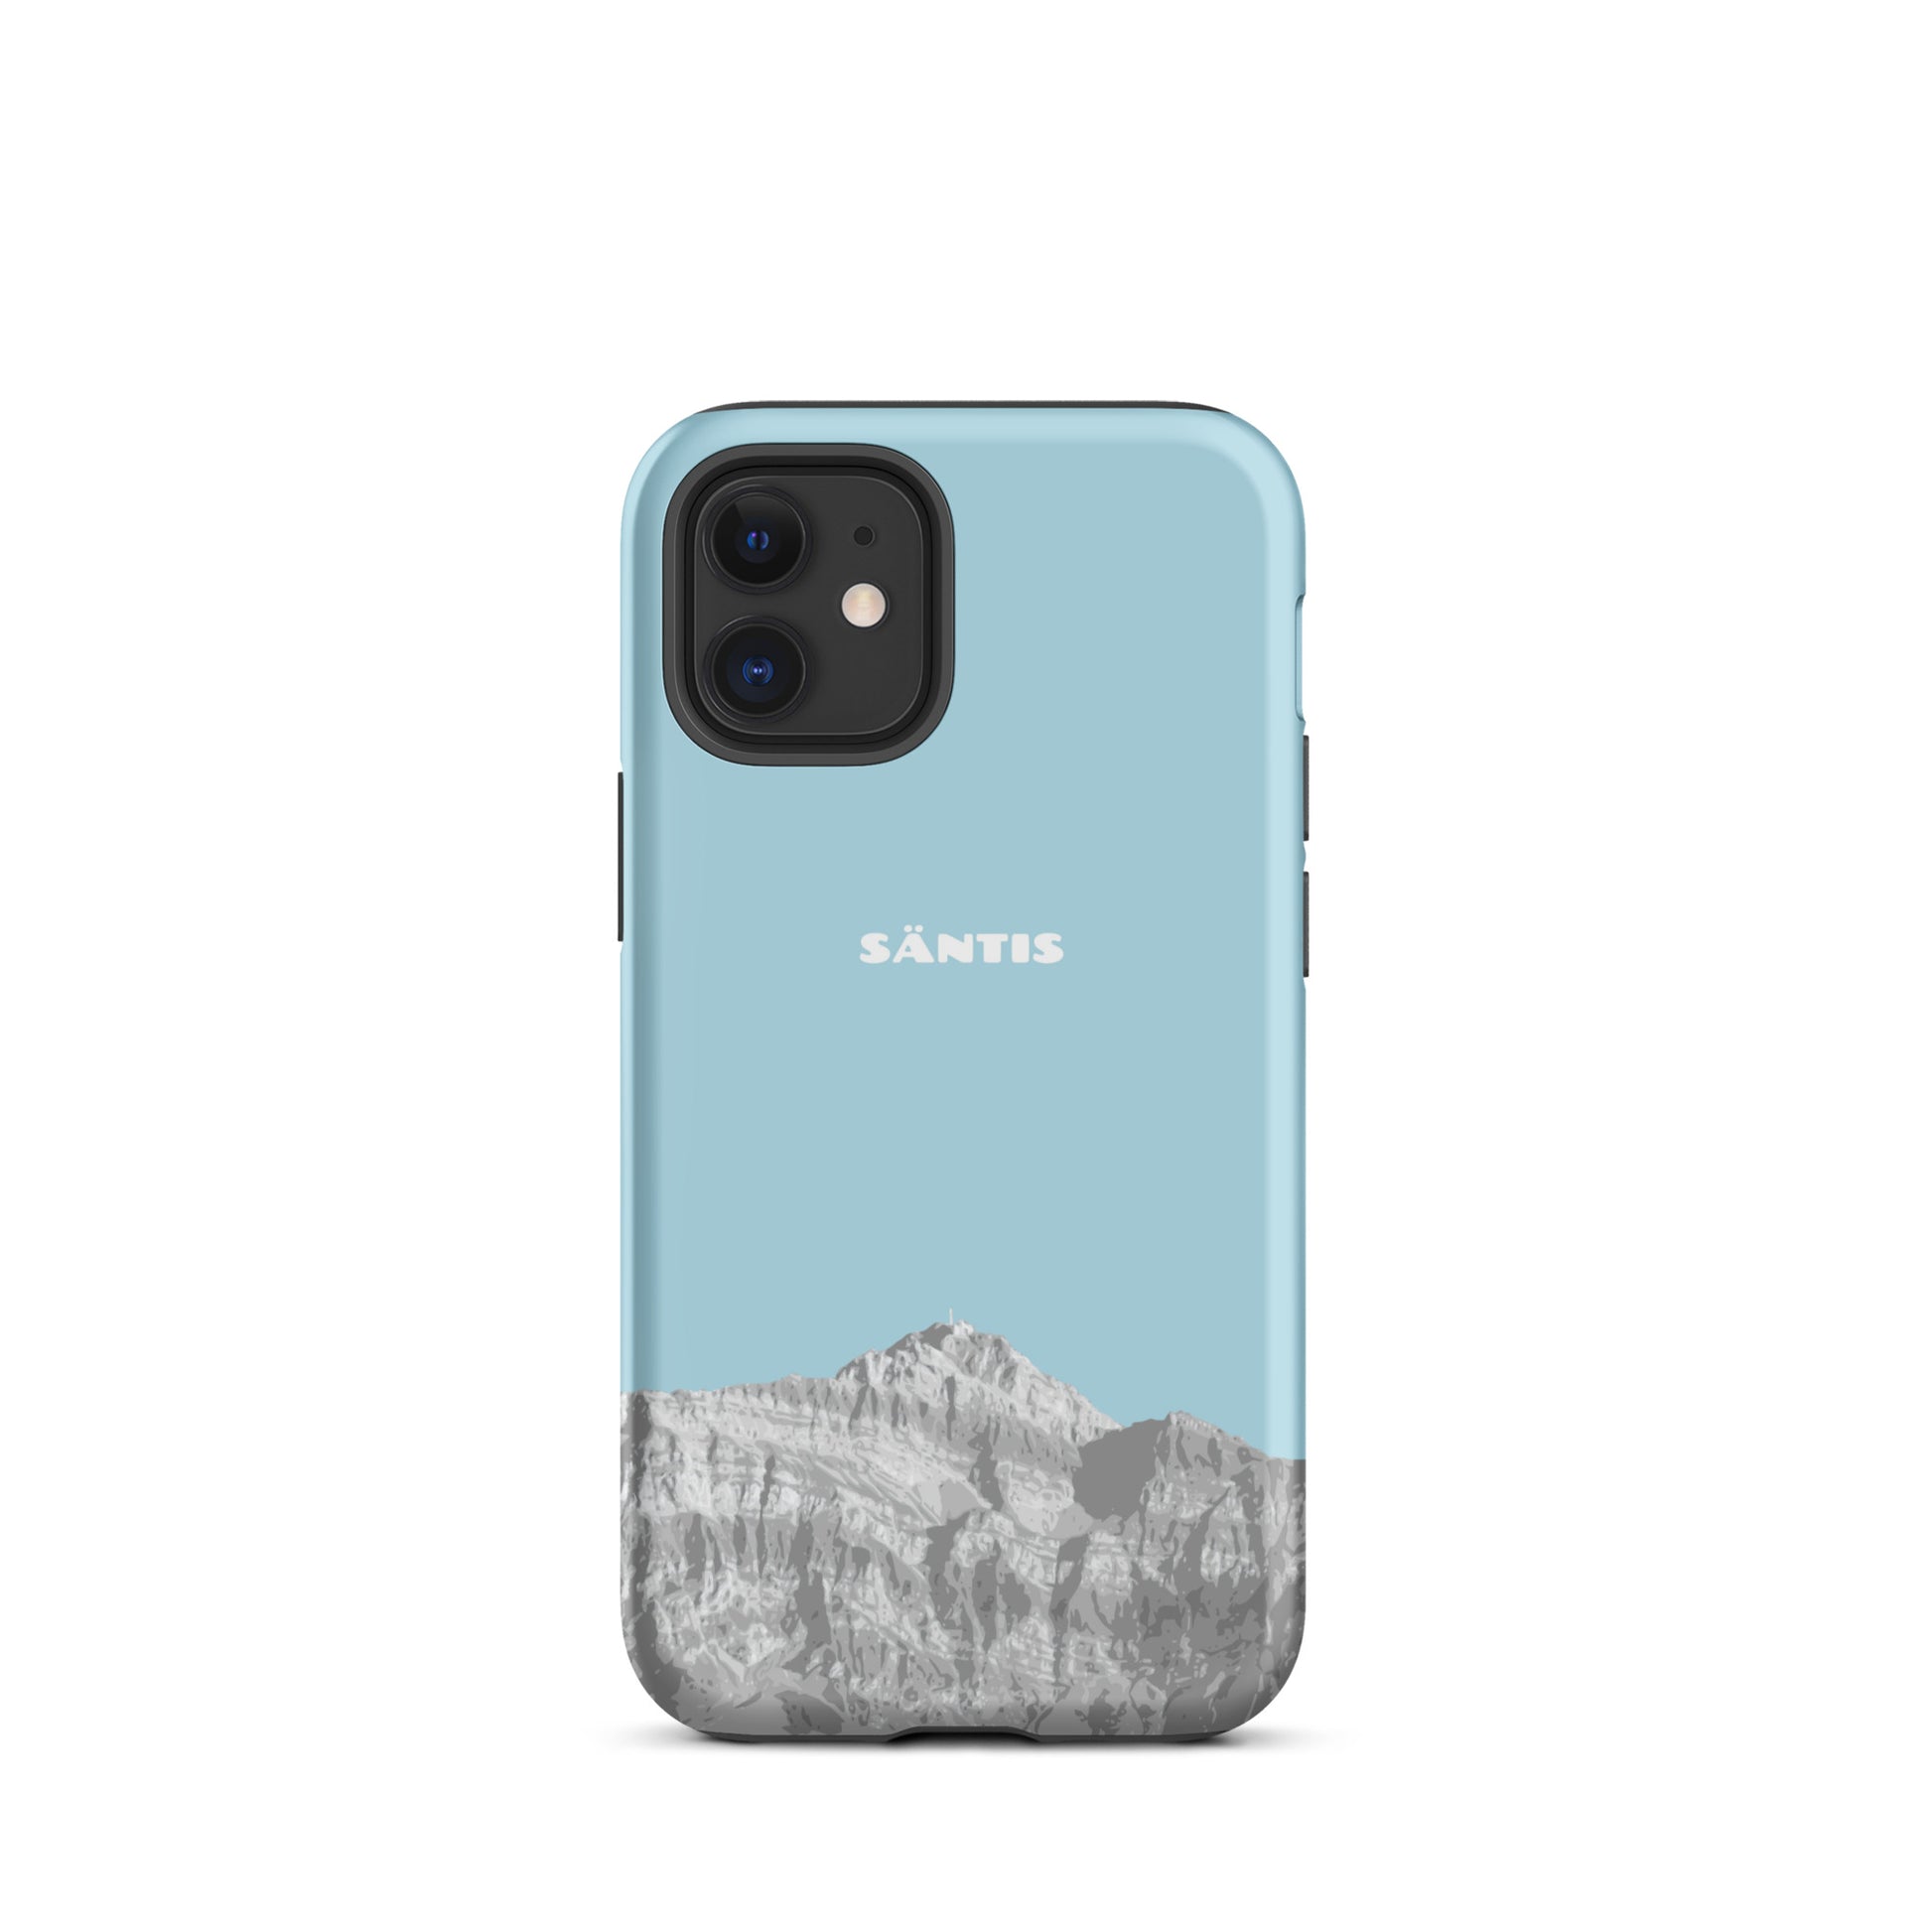 Hülle für das iPhone 12 Mini von Apple in der Farbe Hellblau, dass den Säntis im Alpstein zeigt.